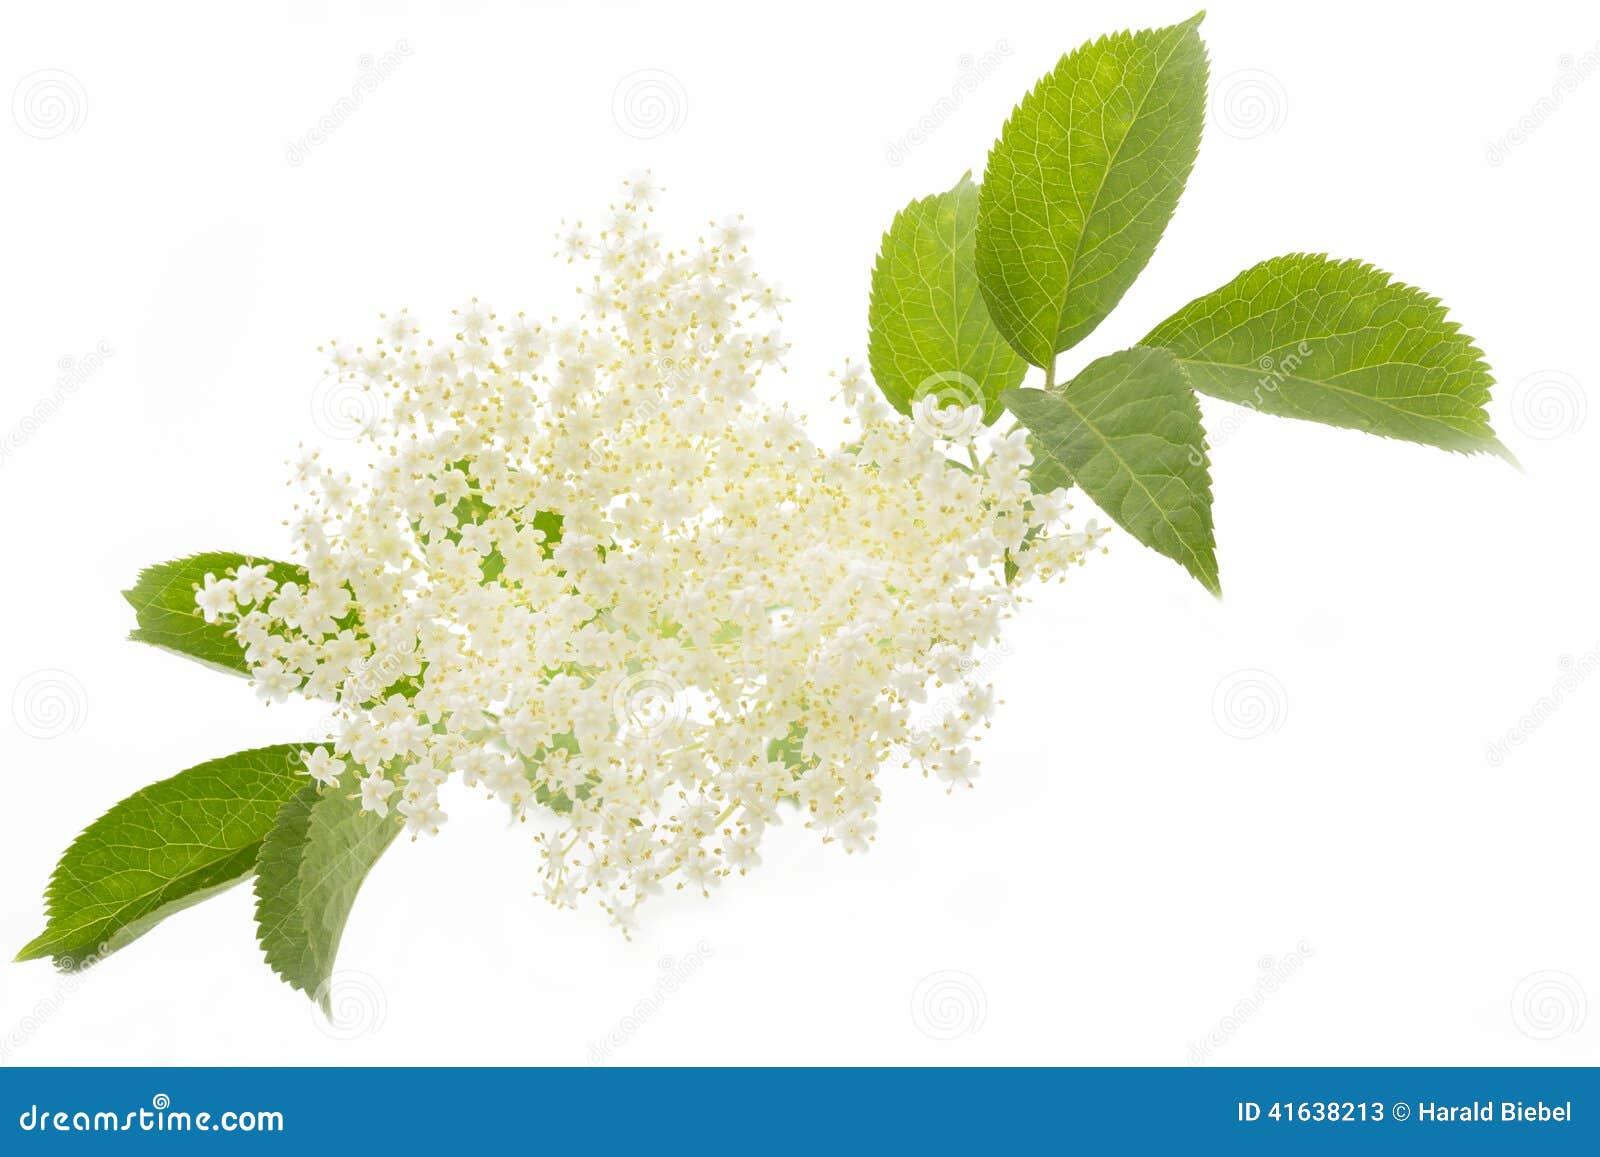 elderflower on white background